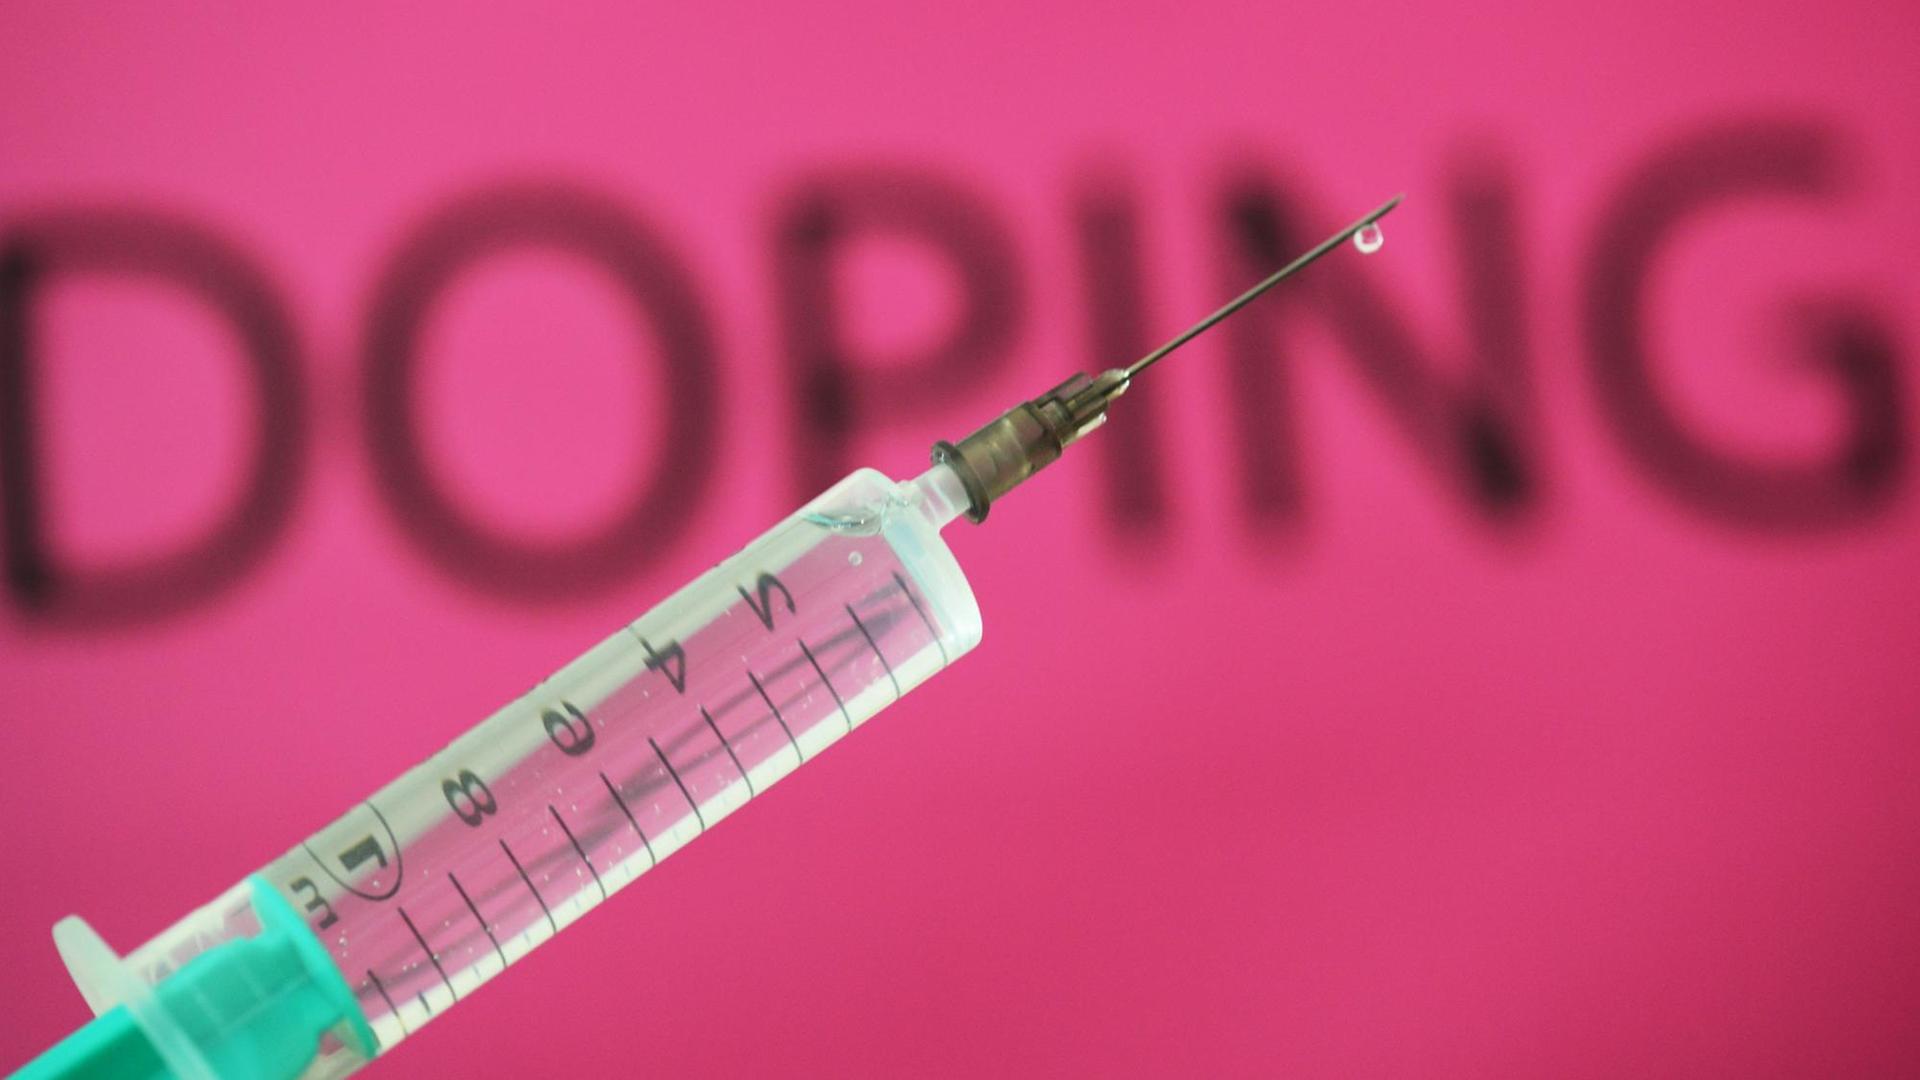 Eine Spritze ist vor dem Wort "Doping" zu sehen. Illustration